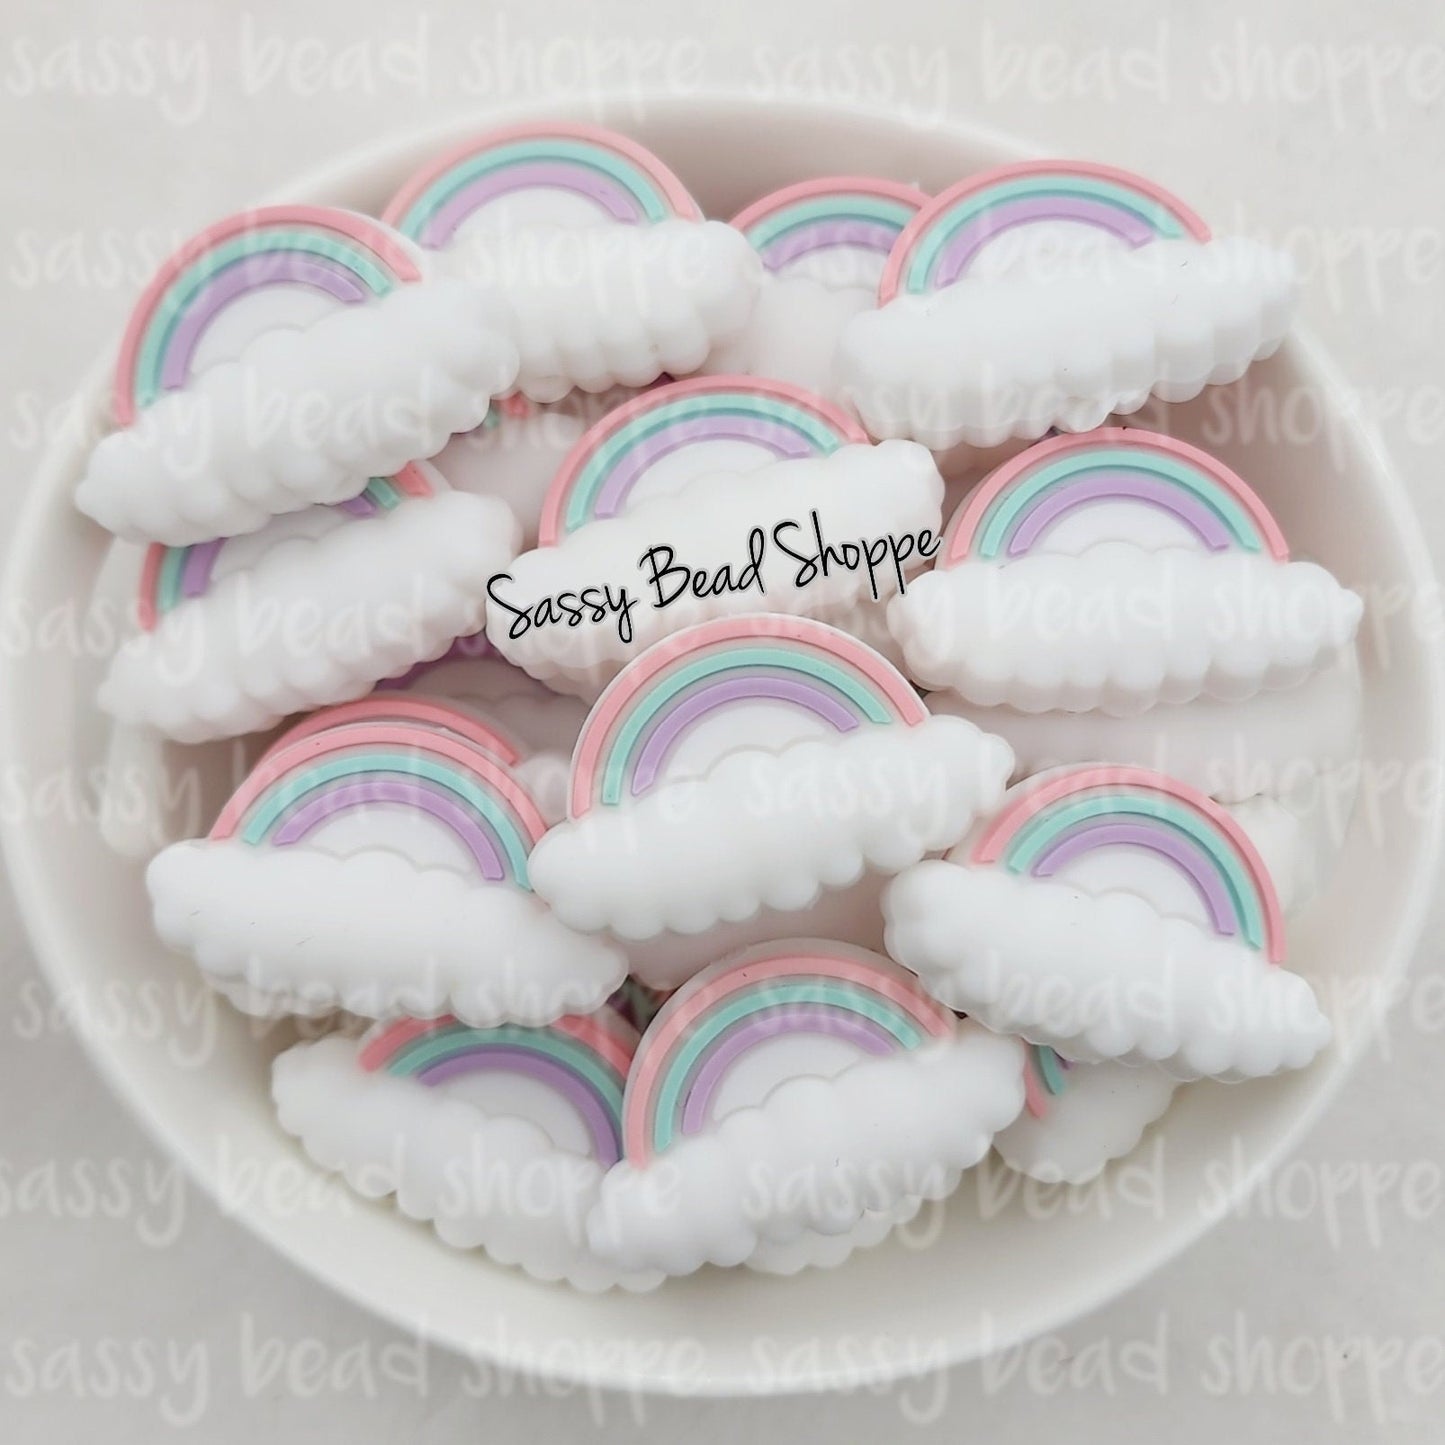 Sassy Bead Shoppe Rainbow Cloud Focal Bead